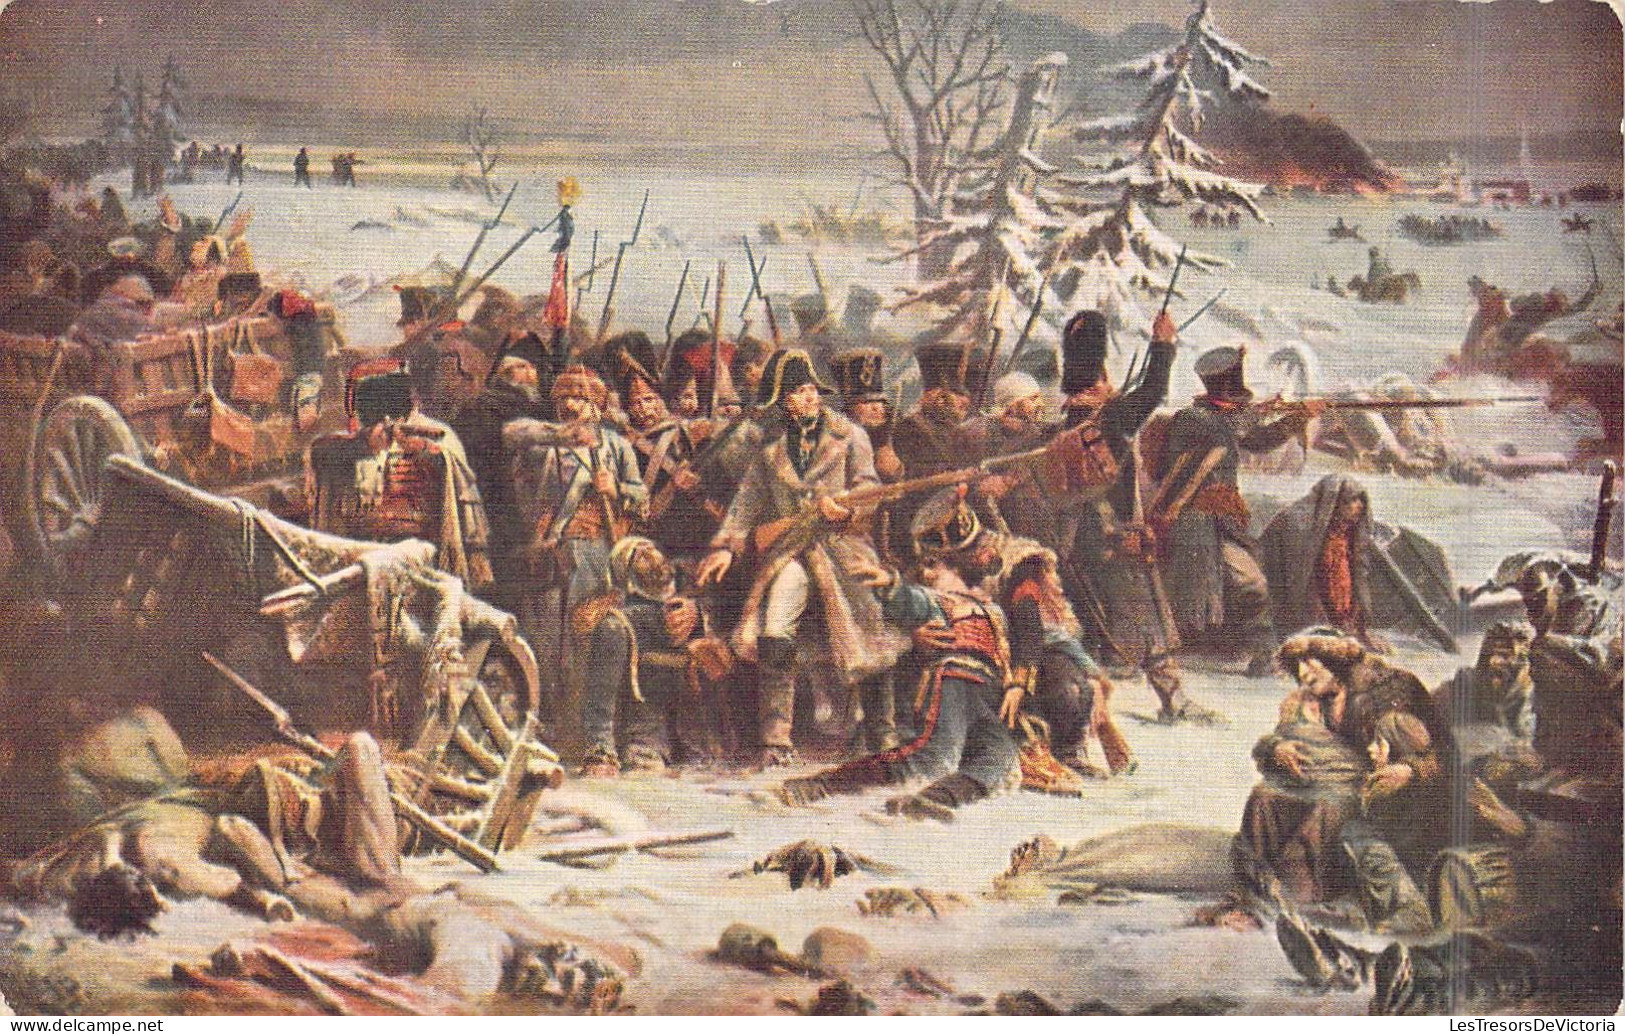 Militaria - Guerres - Retraite De Russie - Décembre 1812 - Carte Postale Ancienne - Otras Guerras